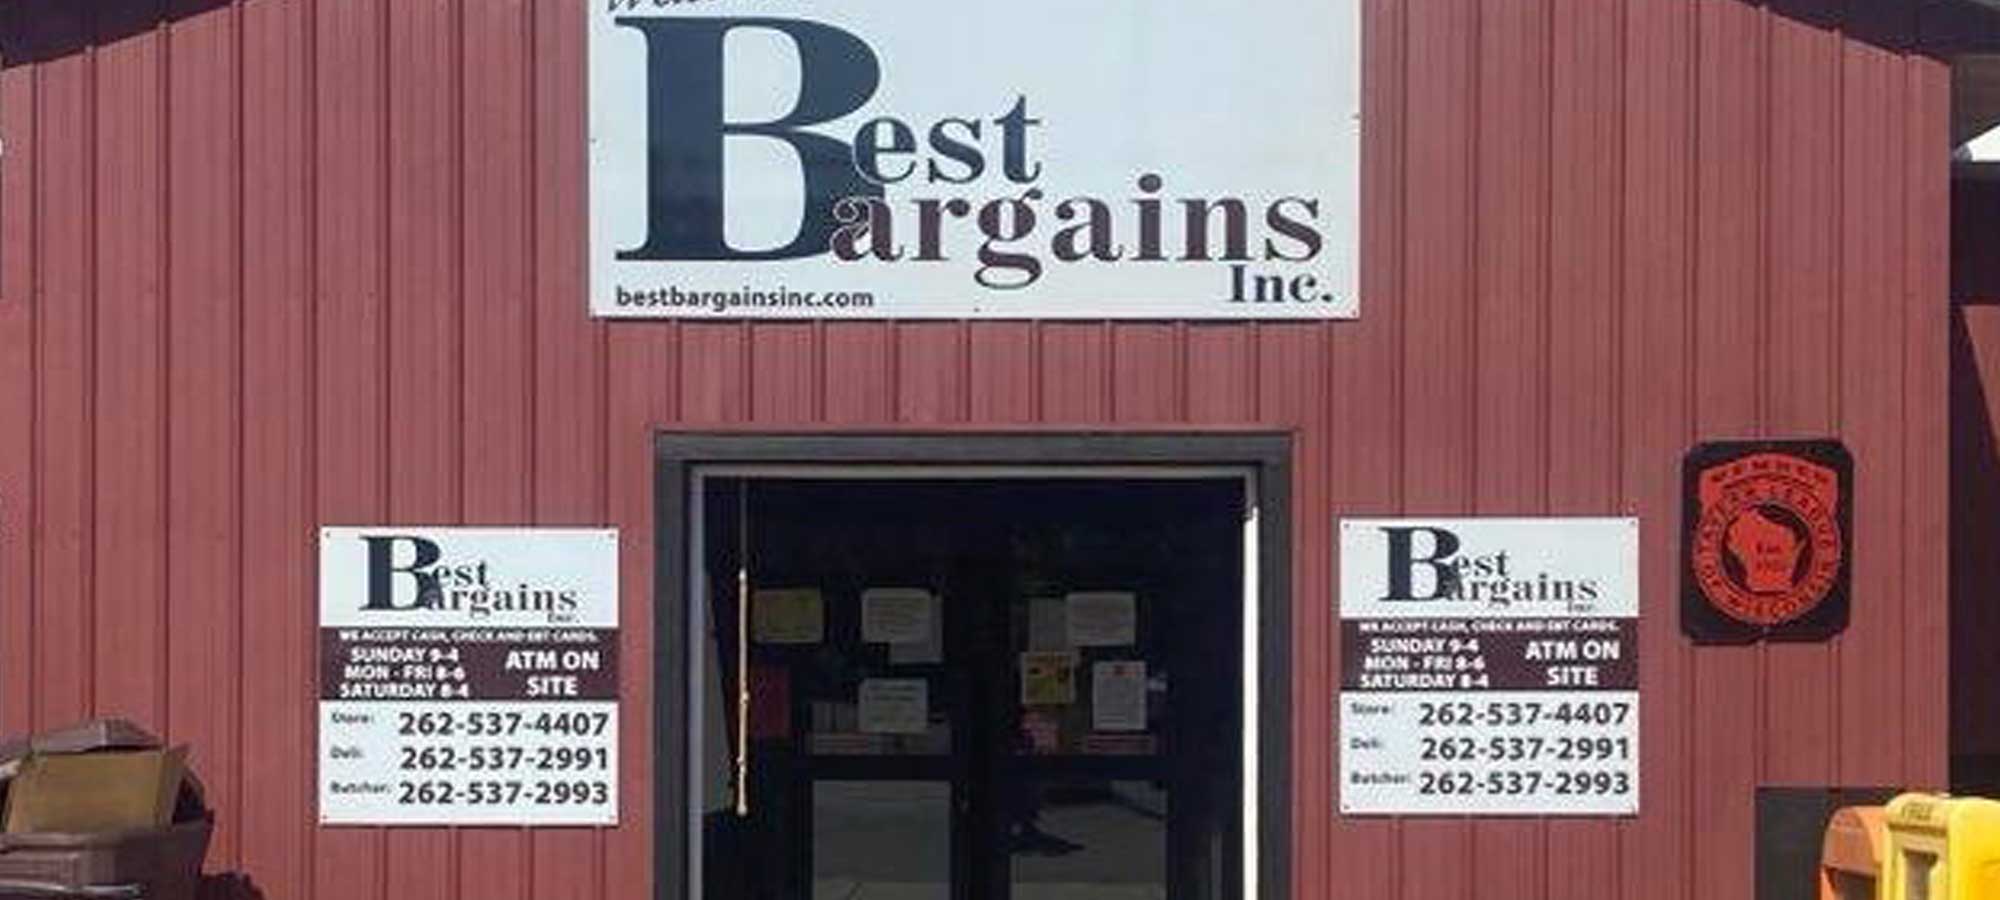 Best Bargains building